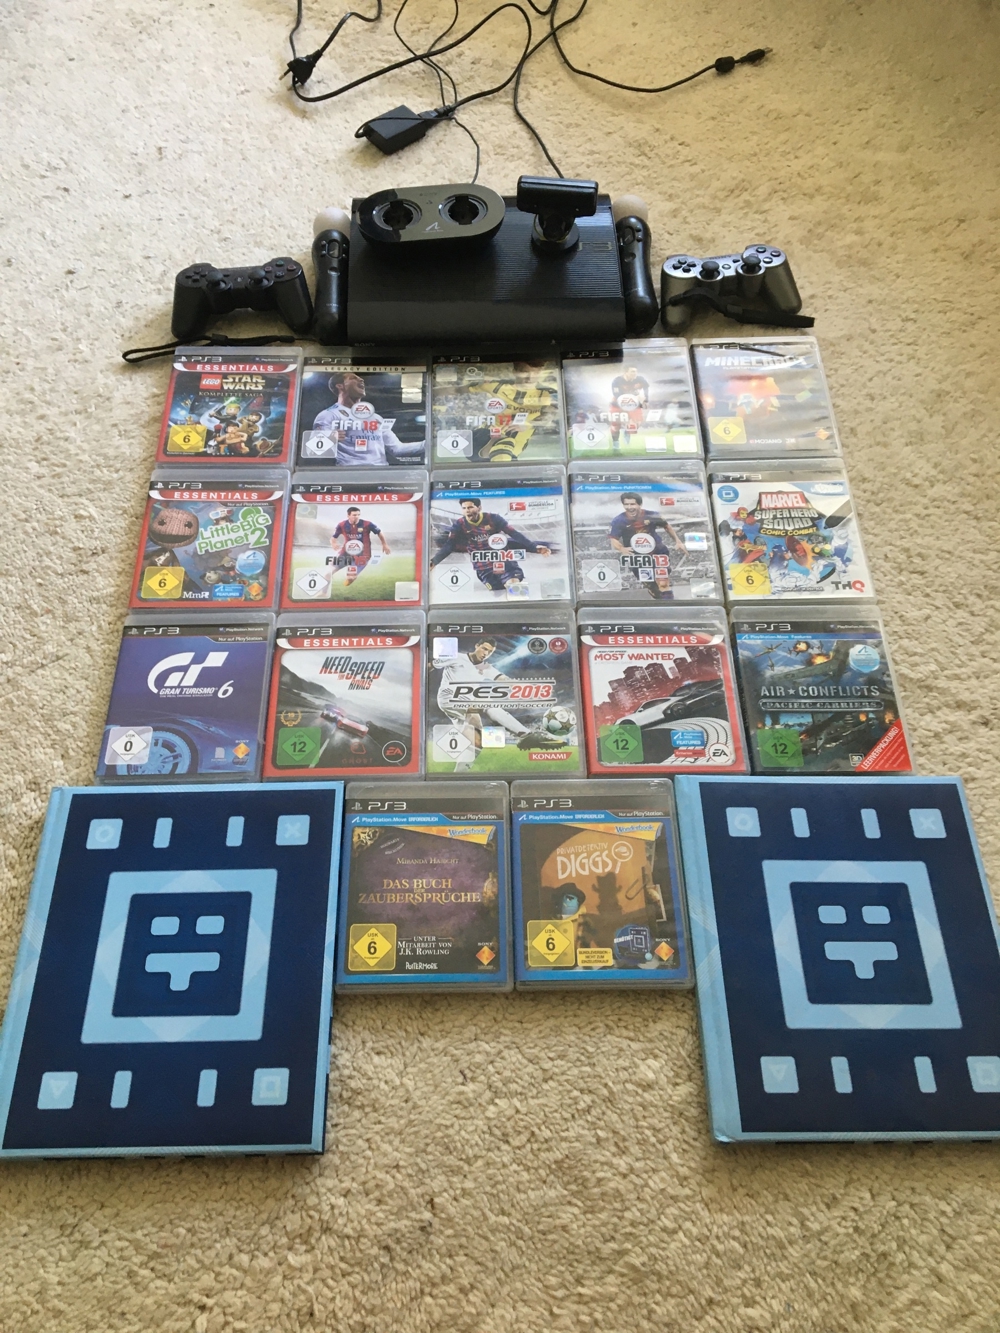 PlayStation 3 mit 2 Controllern, 2 Move Controllern, 17 Spielen, 2 Books und Kamera